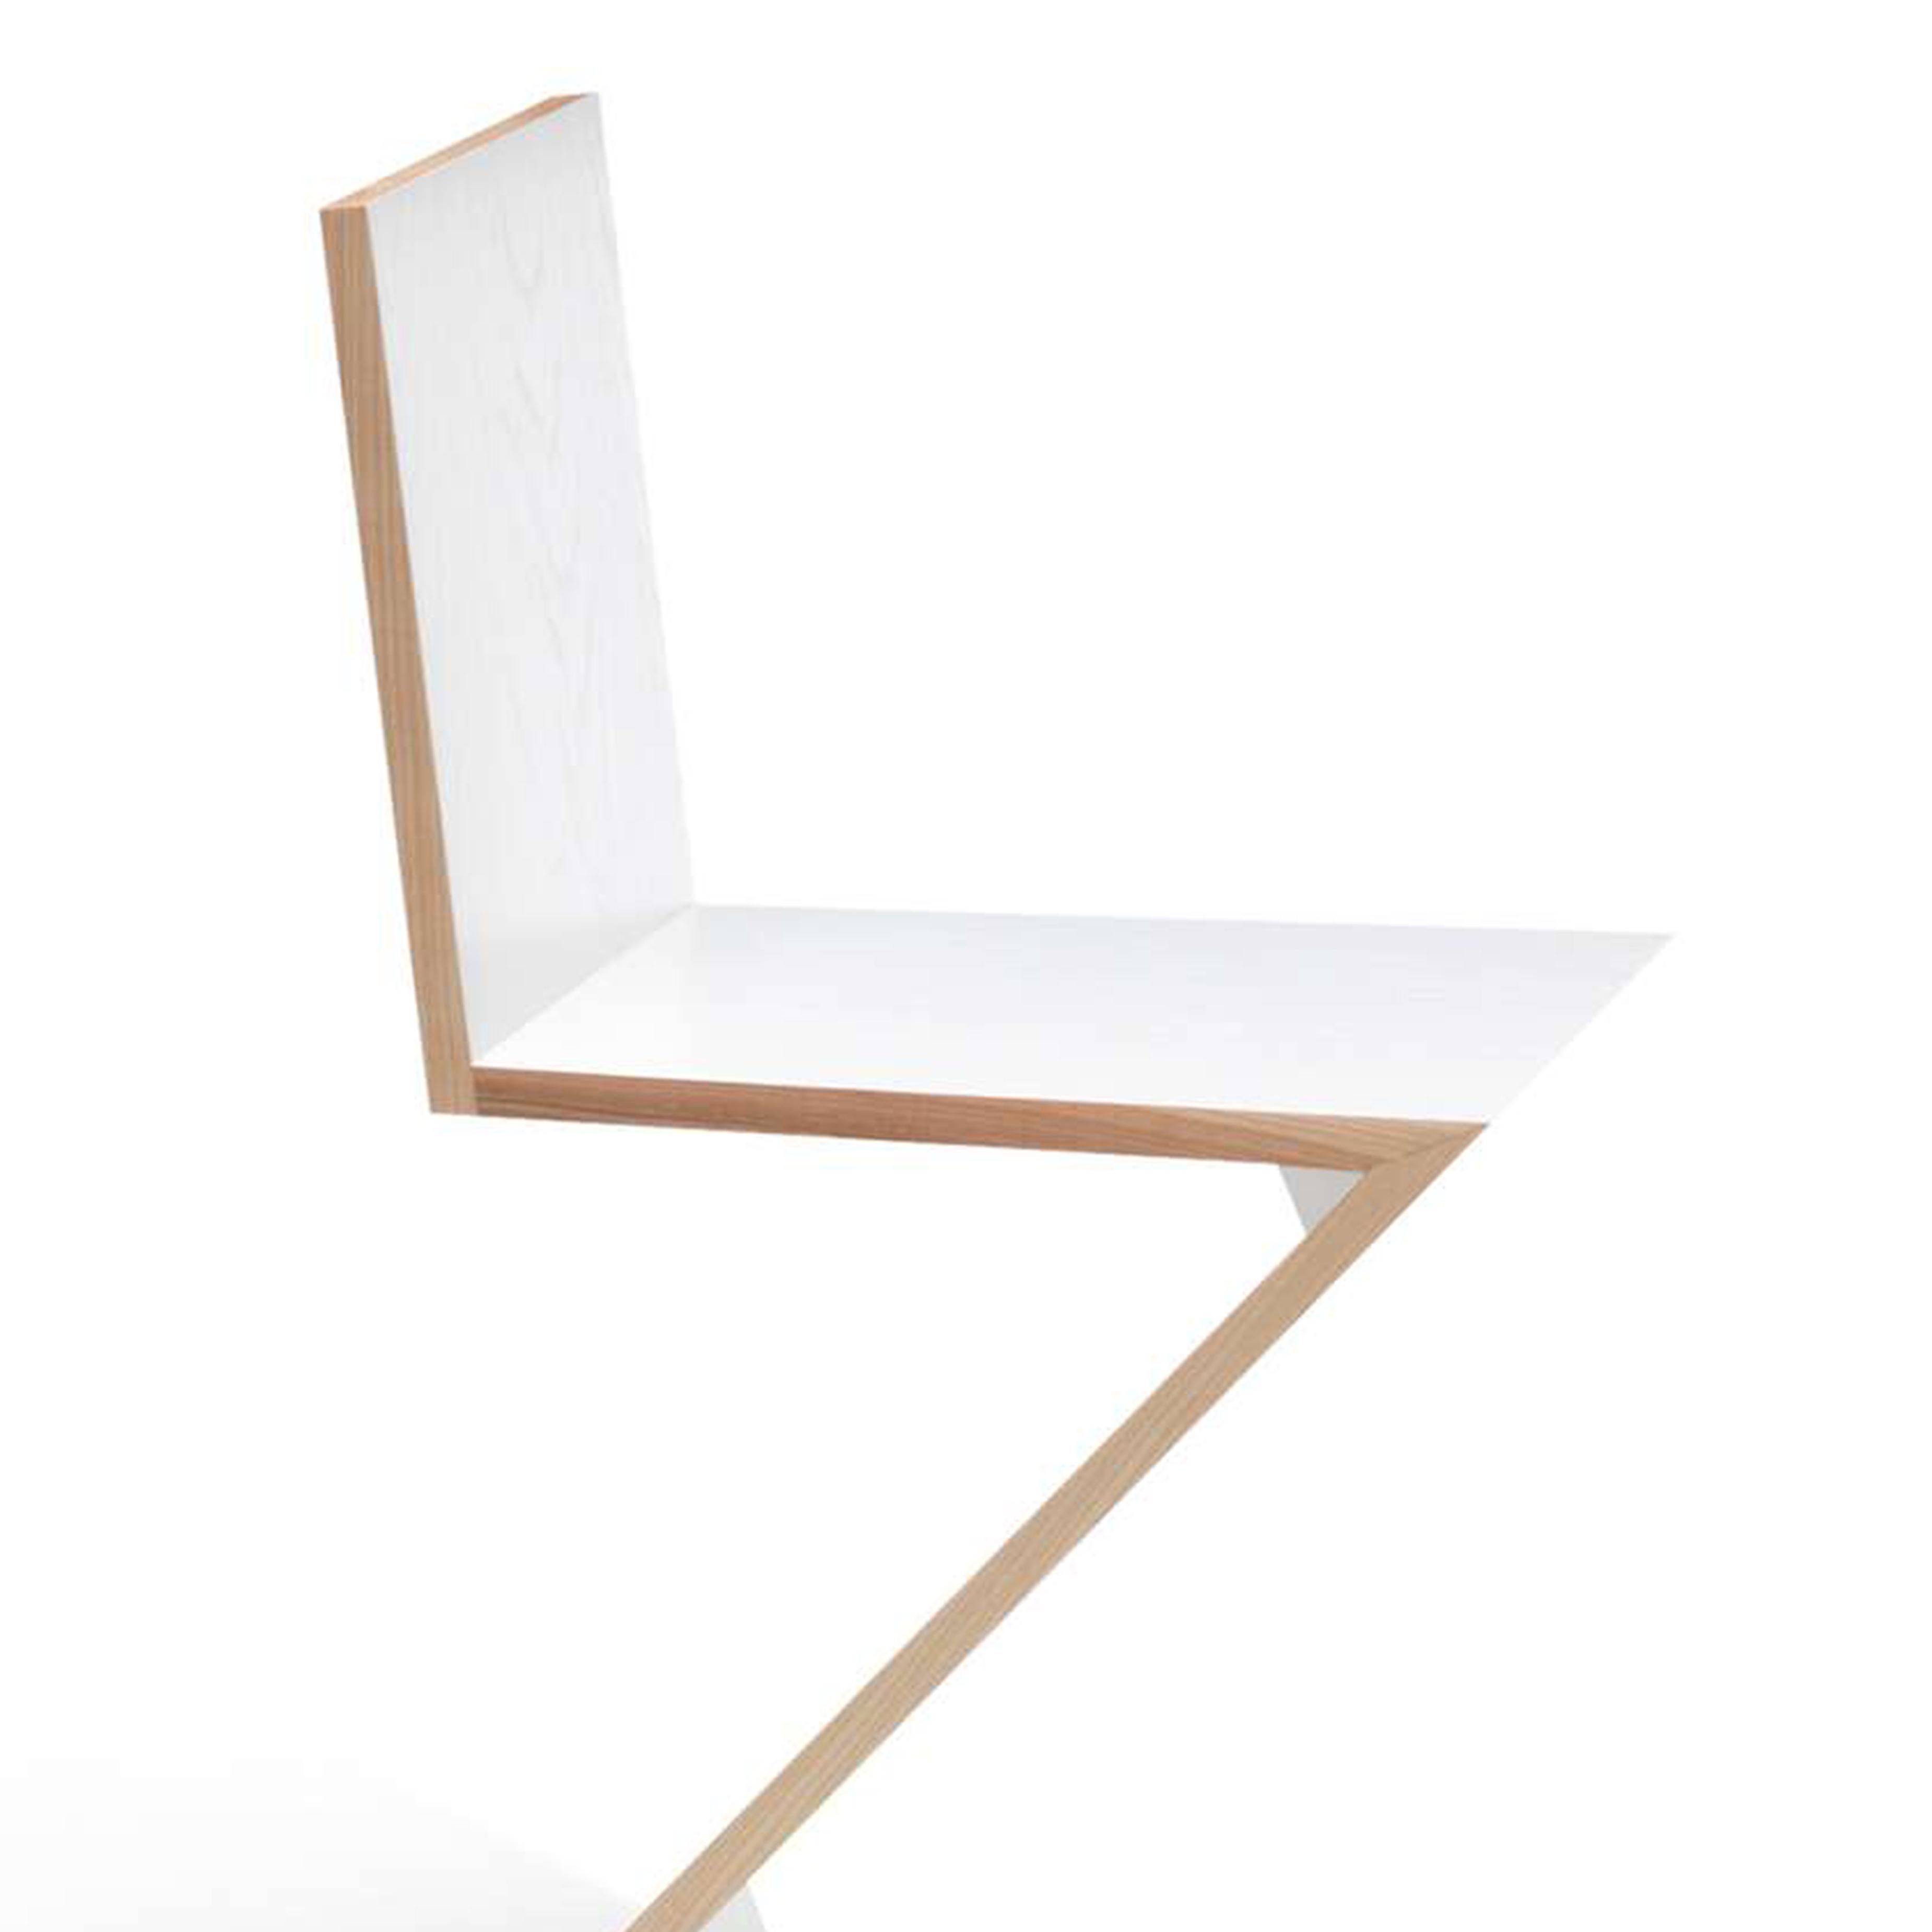 Stuhl, entworfen von Gerrit Thomas Rietveld im Jahr 1934. Neuauflage 1973/ 2011.
Hergestellt von Cassina in Italien.

Dieser von Gerrit Rietveld entworfene Stuhl ist ein frühes Beispiel für eine freitragende Sitzfläche und besteht aus vier